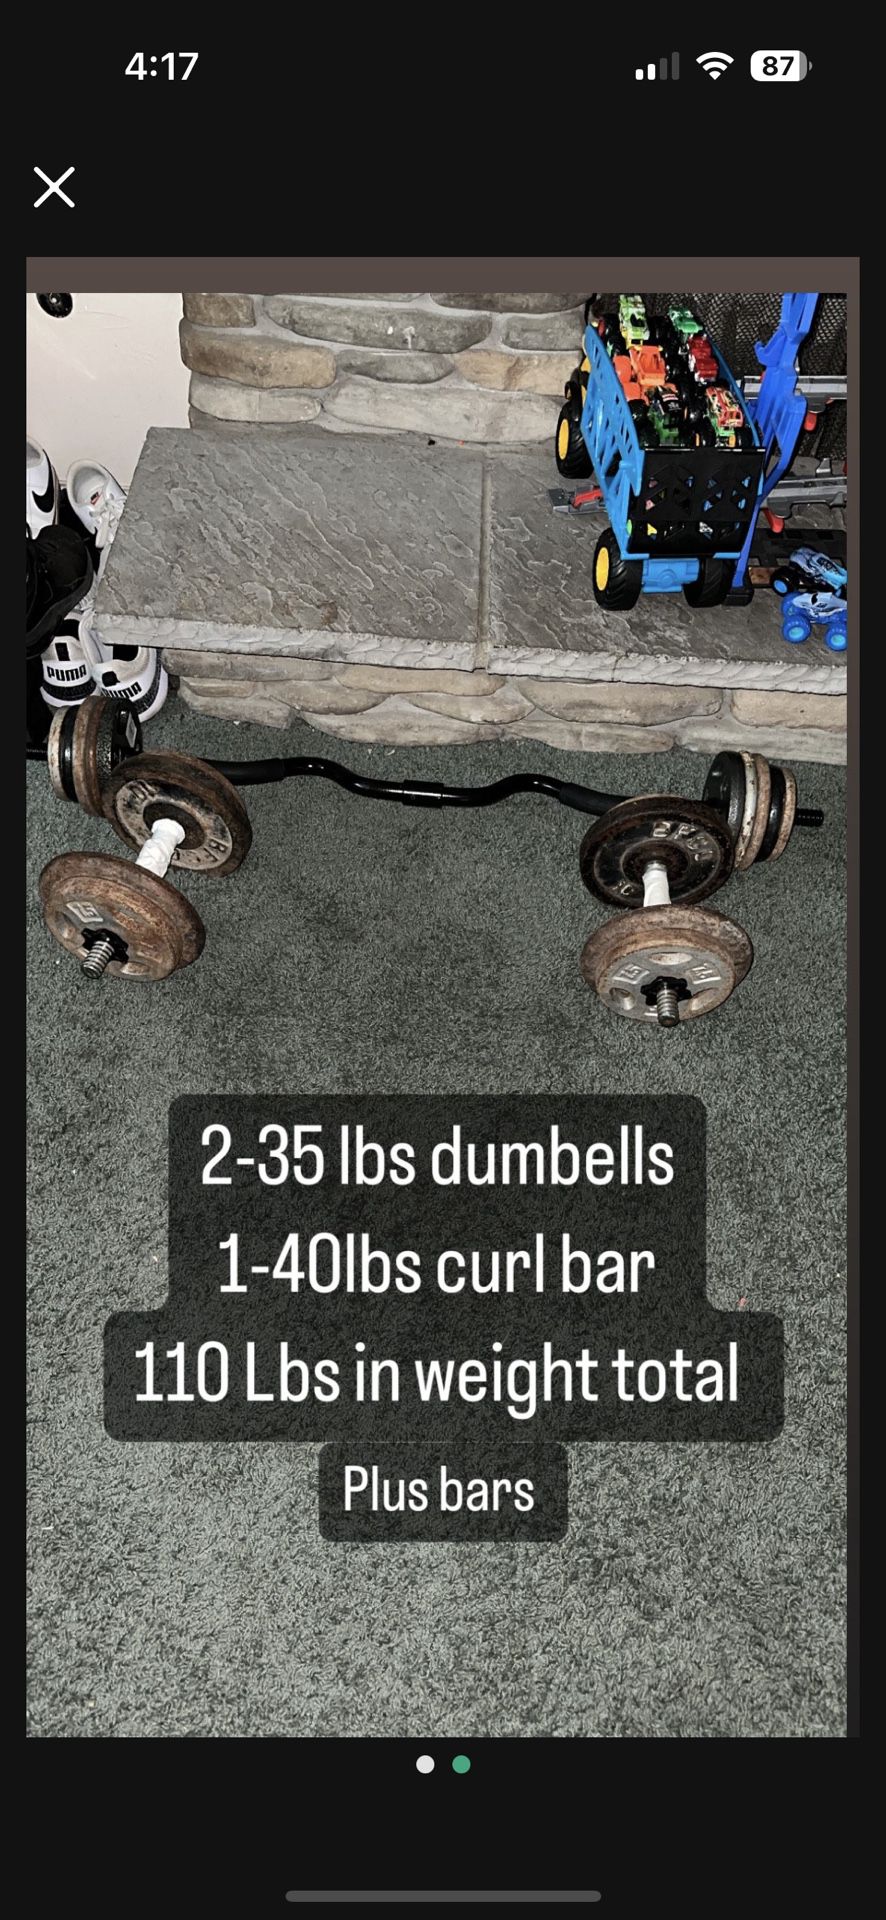 Dumbells An Curl Bar An Weight 